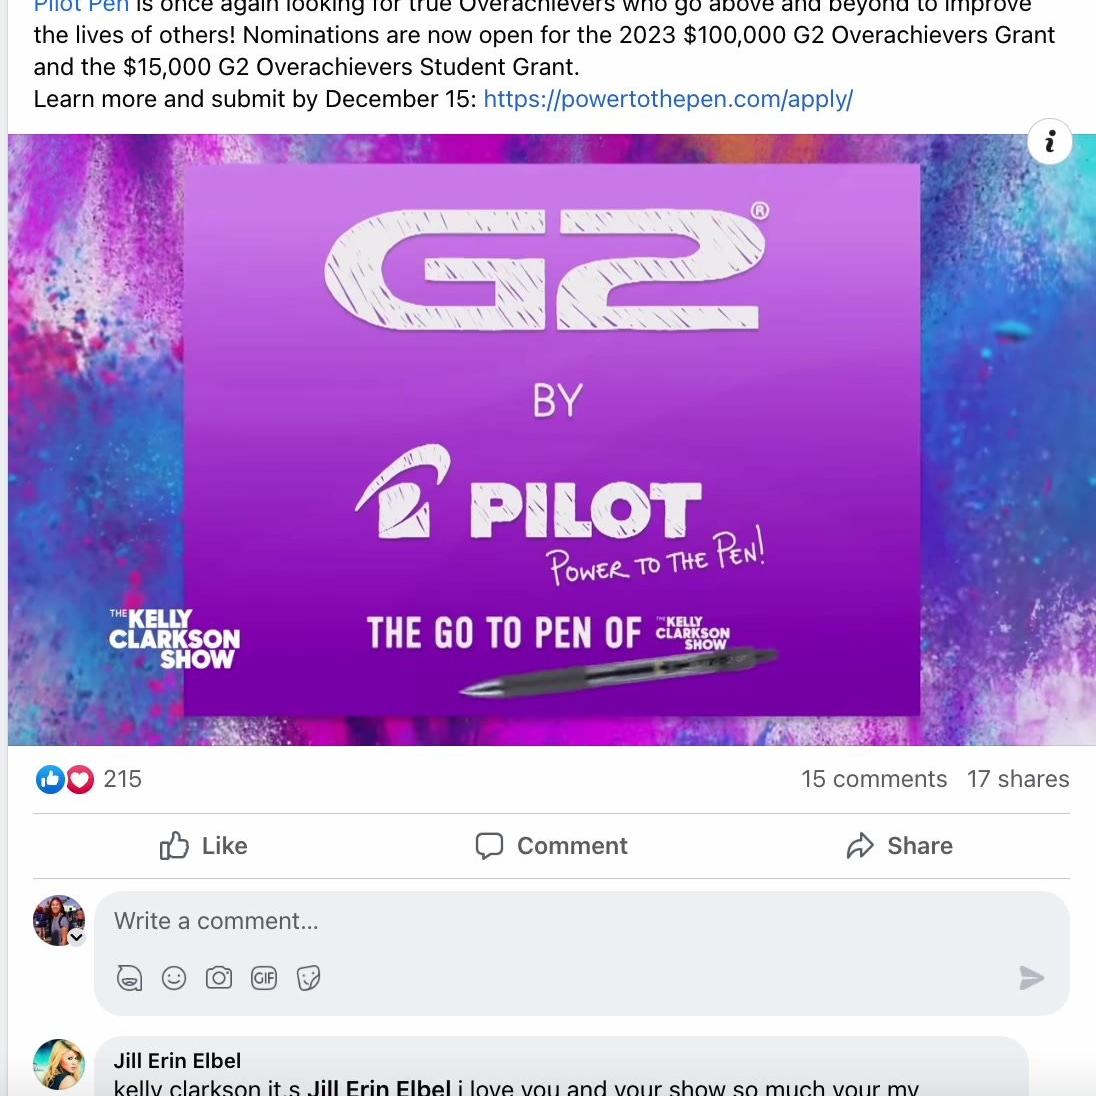 Pilot_Facebook_G2OverachieverAnnouncement2023